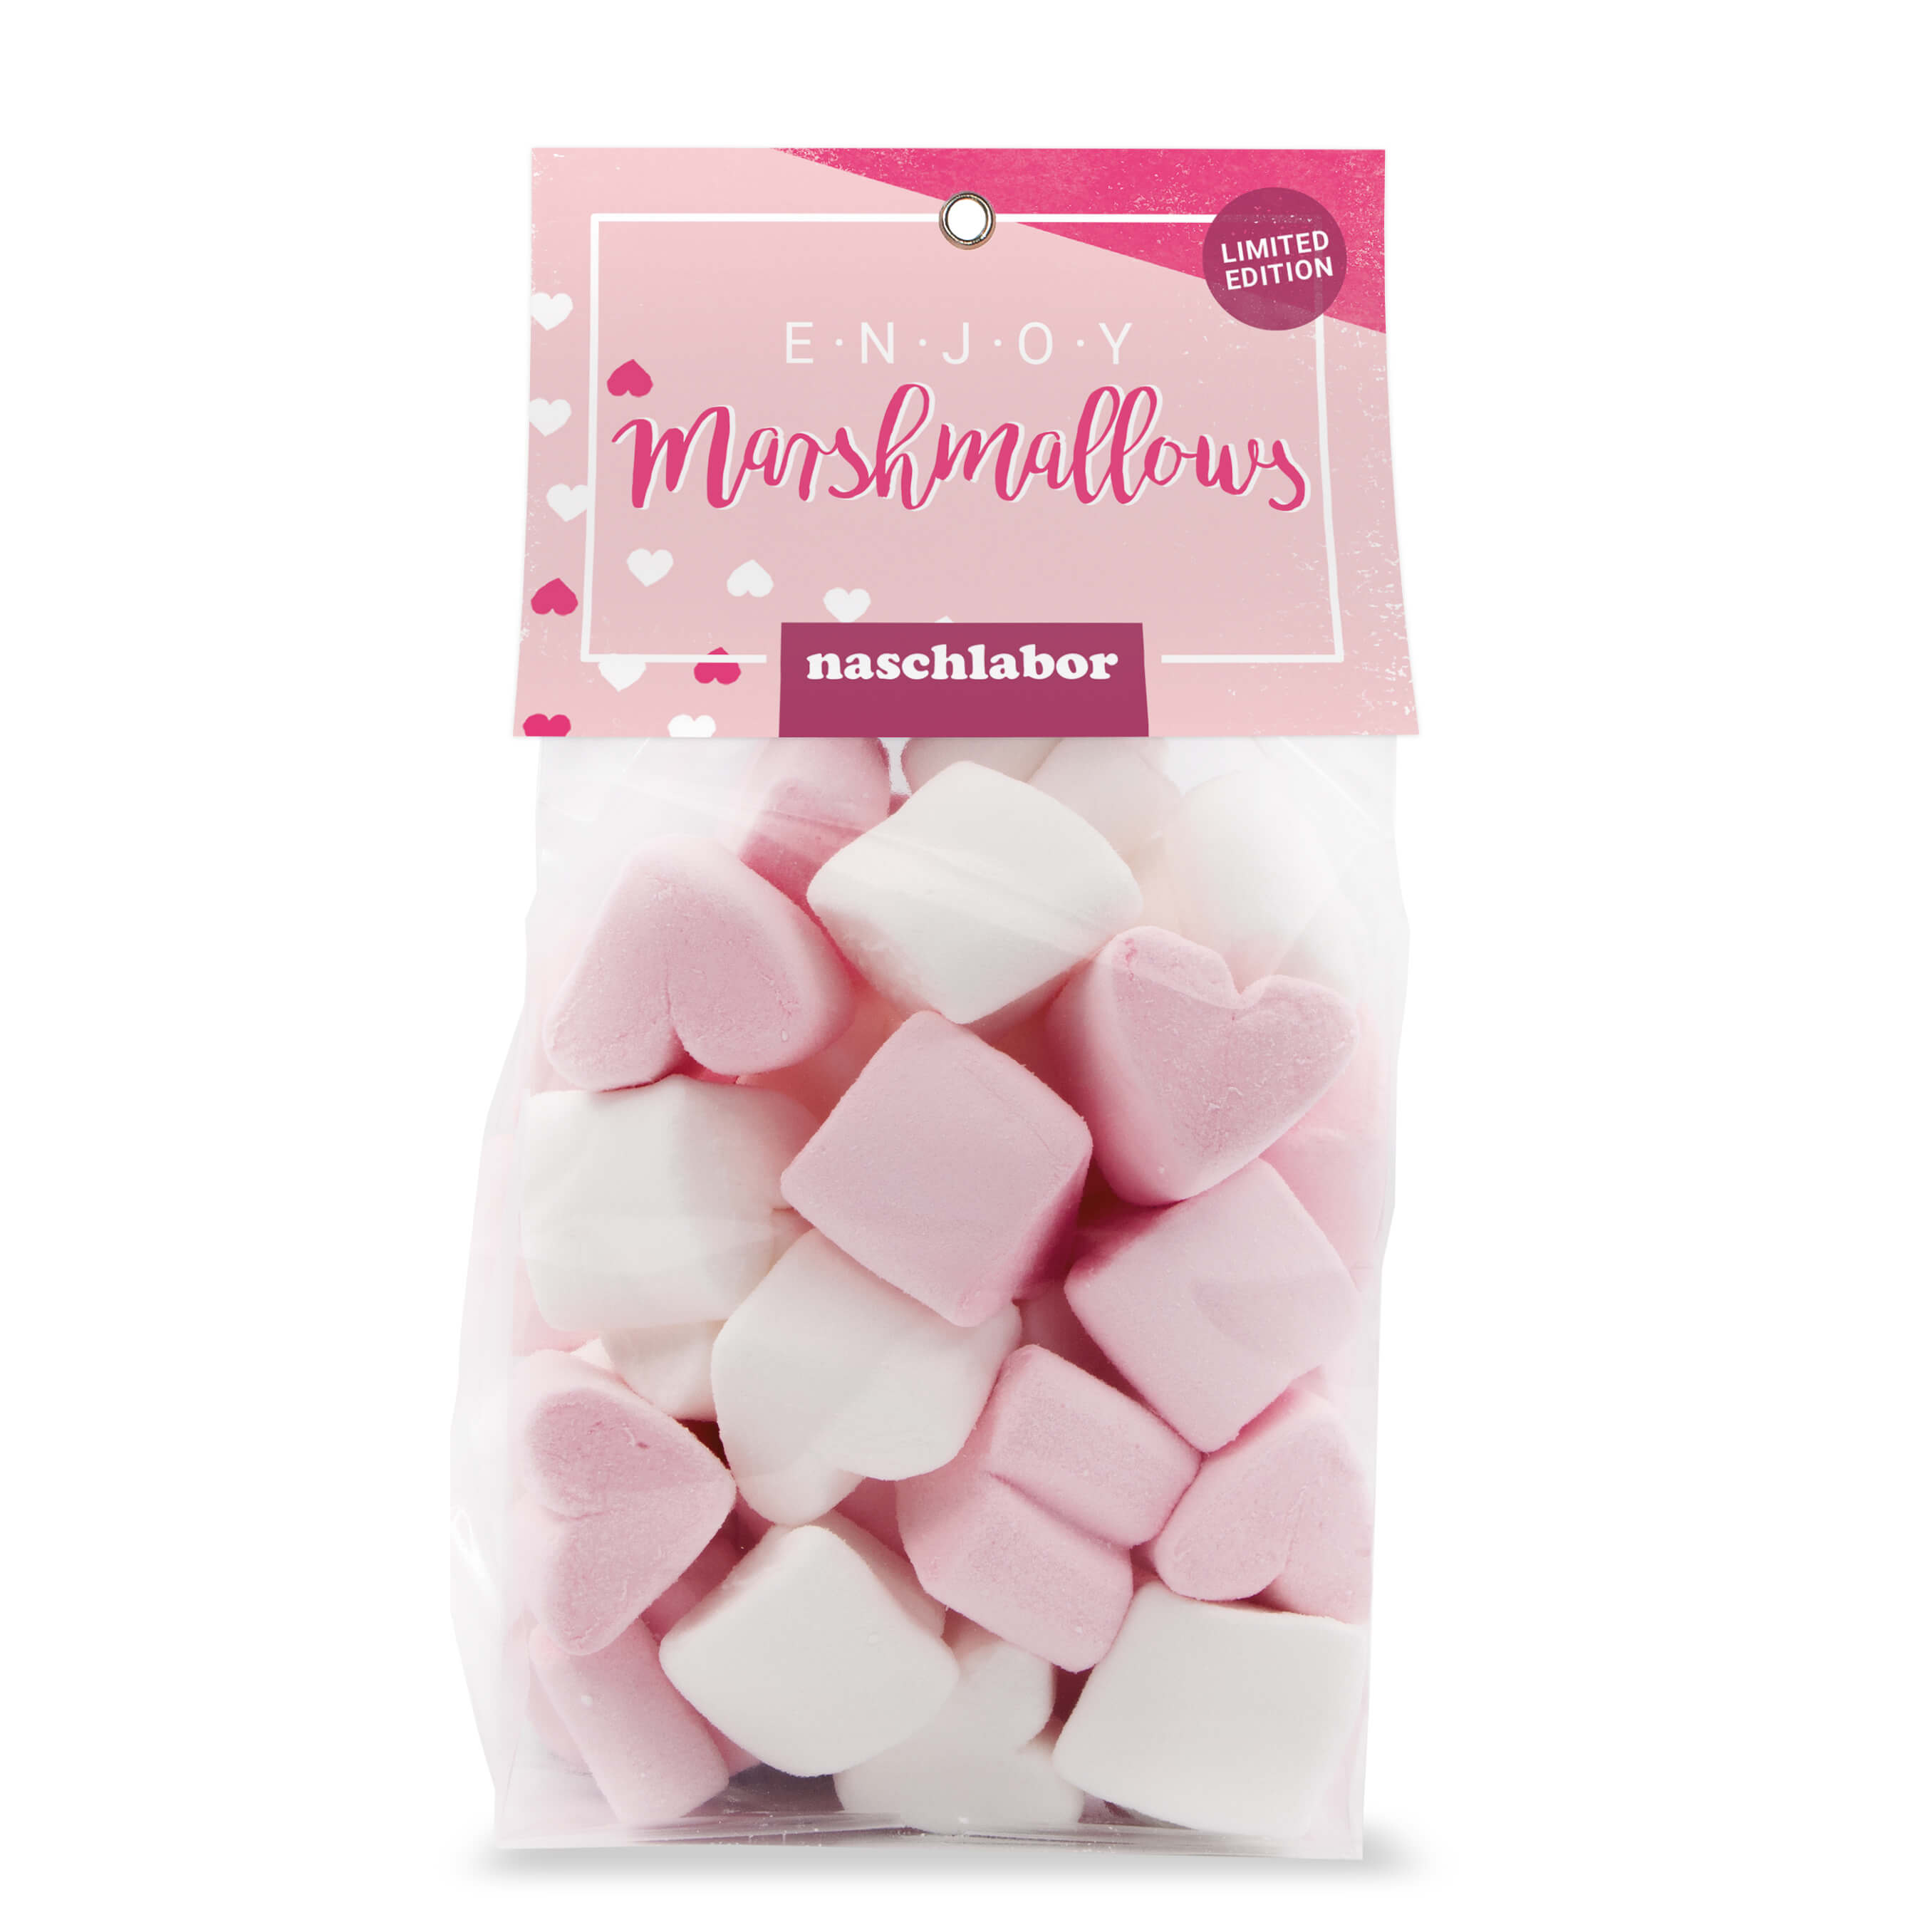 Kennenlern Naschpaket mit Fruchtgummis & Marshmallows